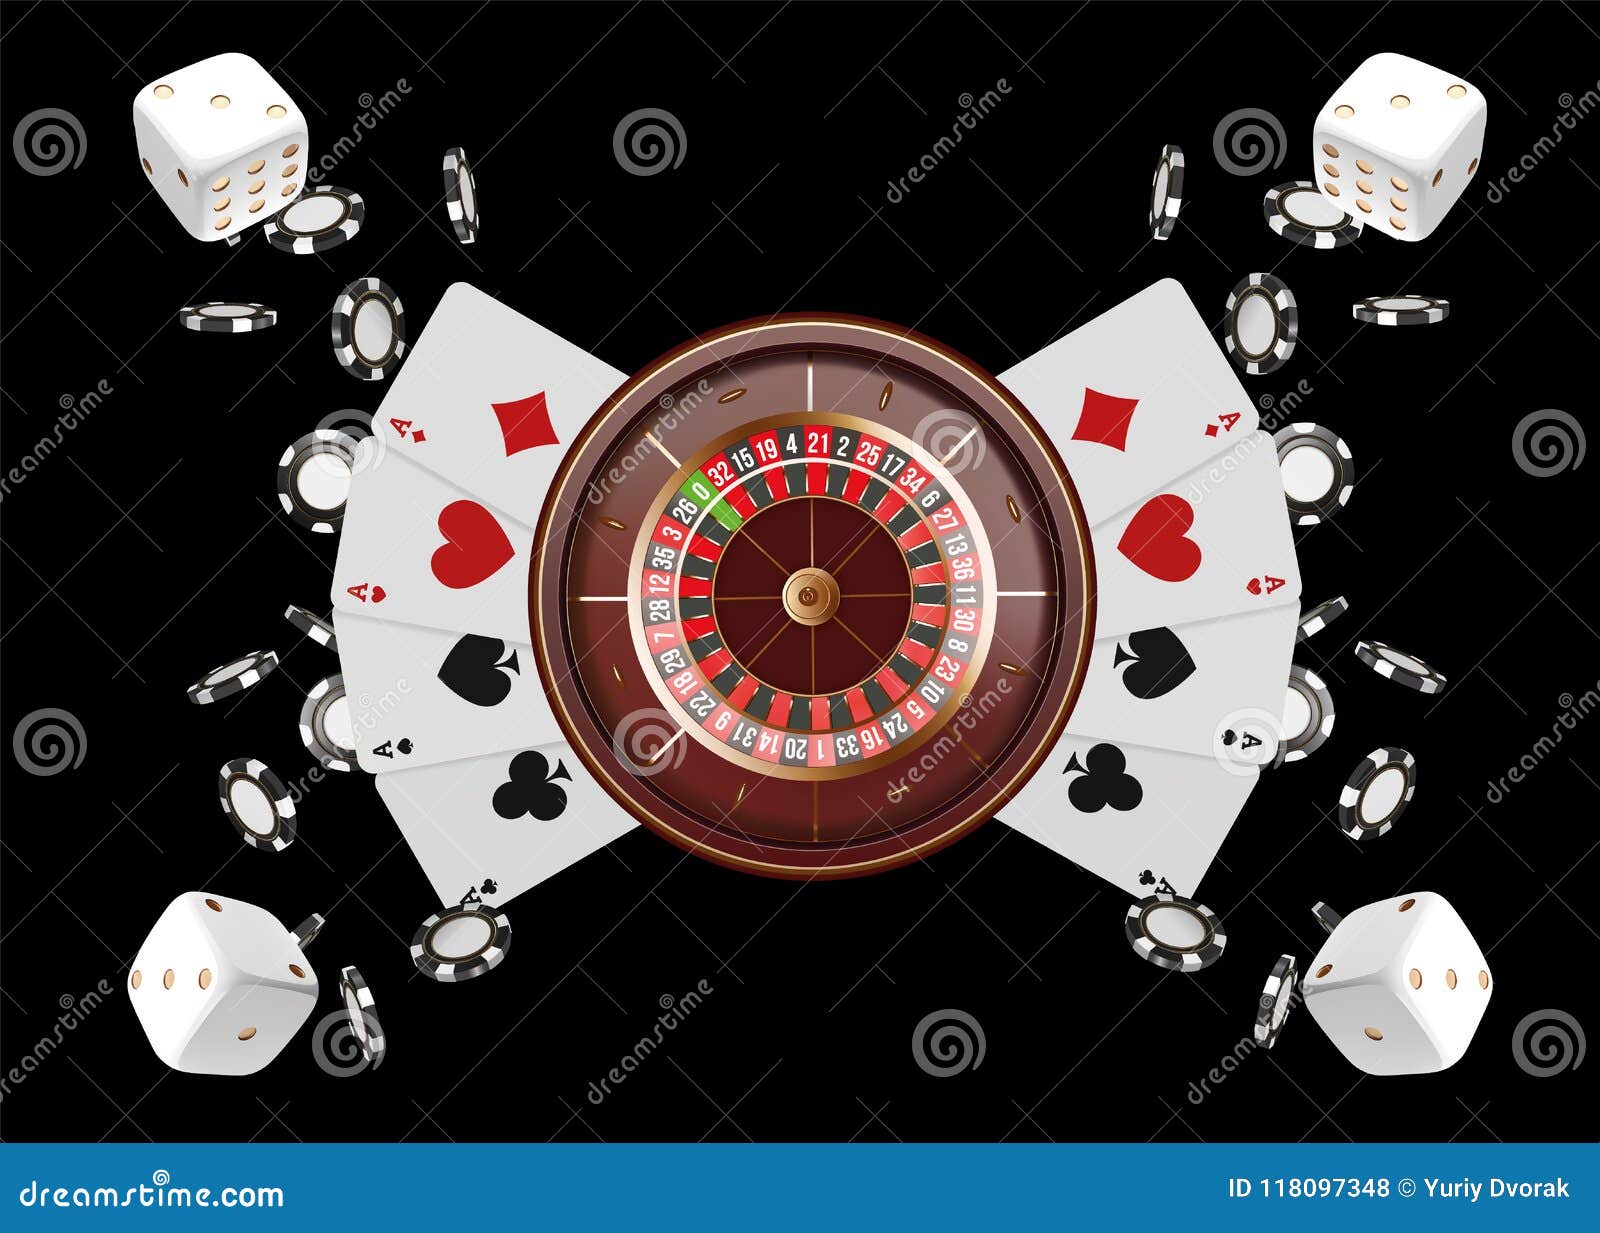 Casino Games 11722